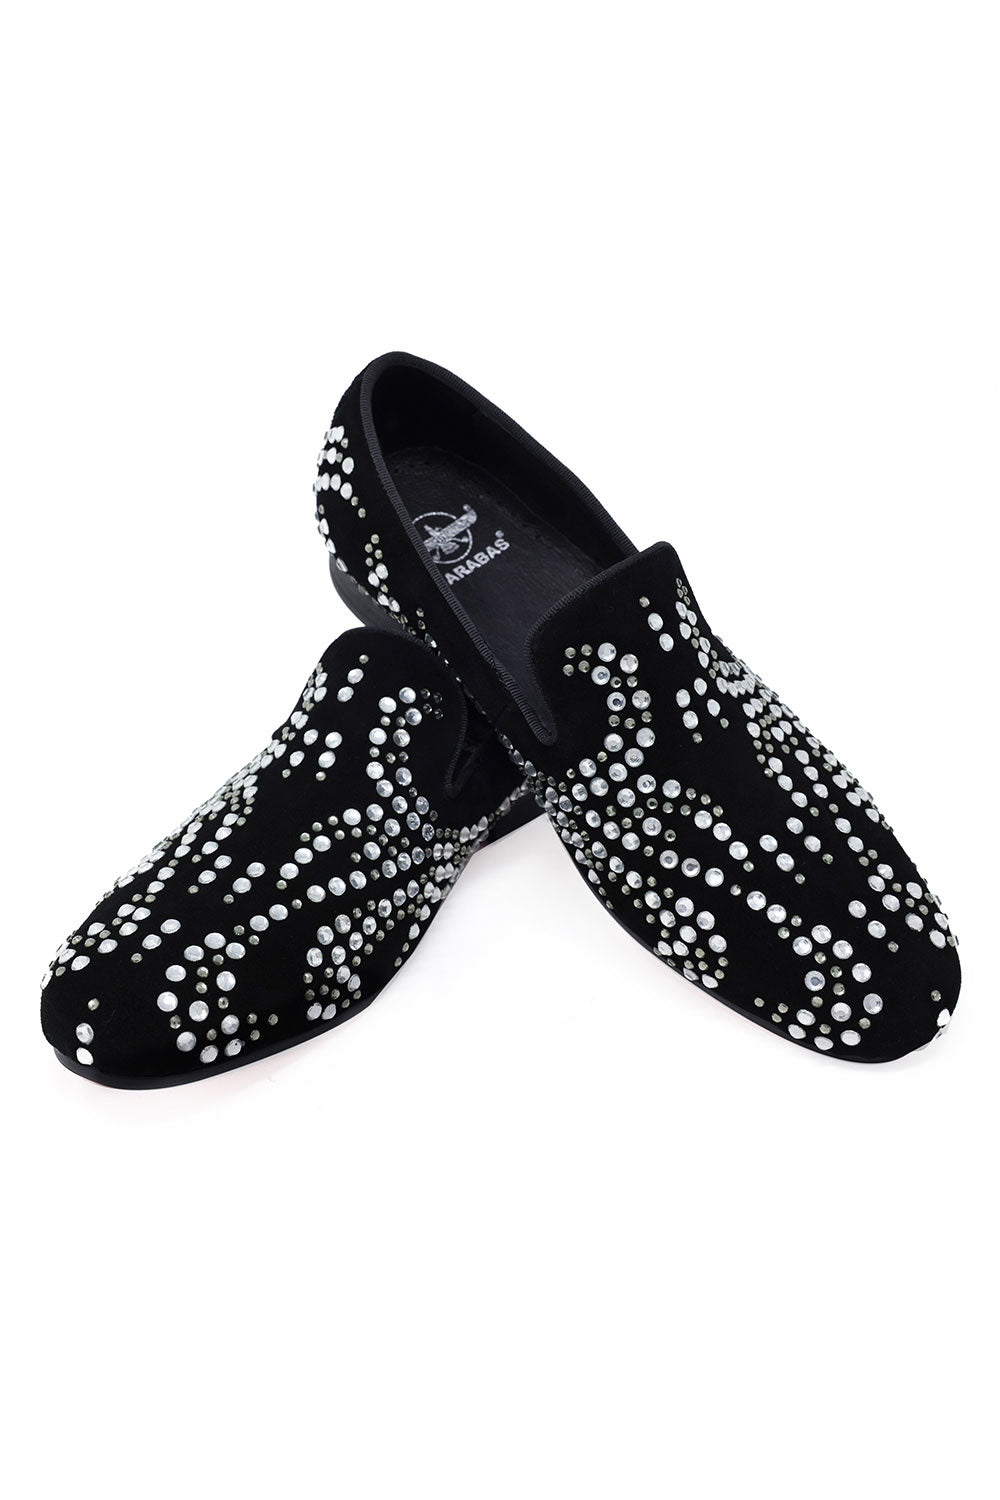 Barabas Men's Rivet Studded Pattern Luxury Slip On Dress Shoes SH4003